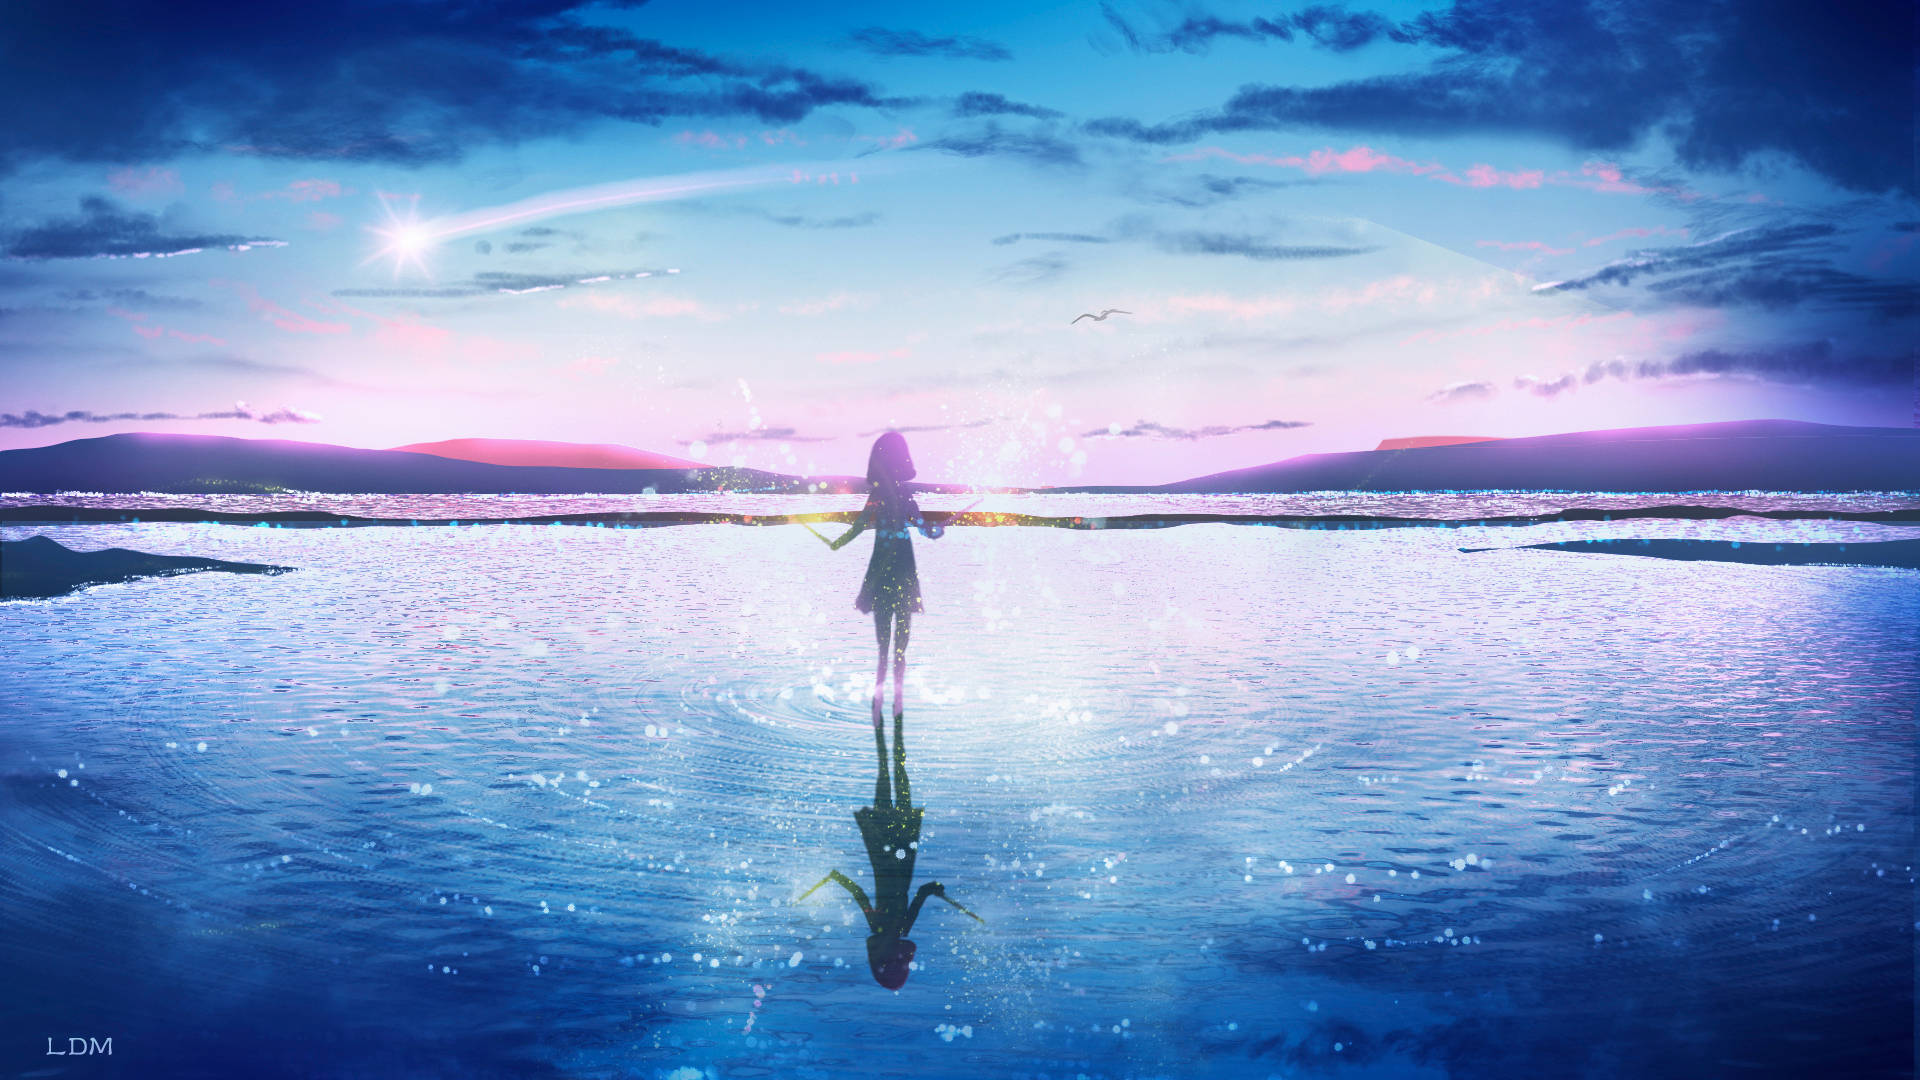 Anime Aesthetic Girl On Water